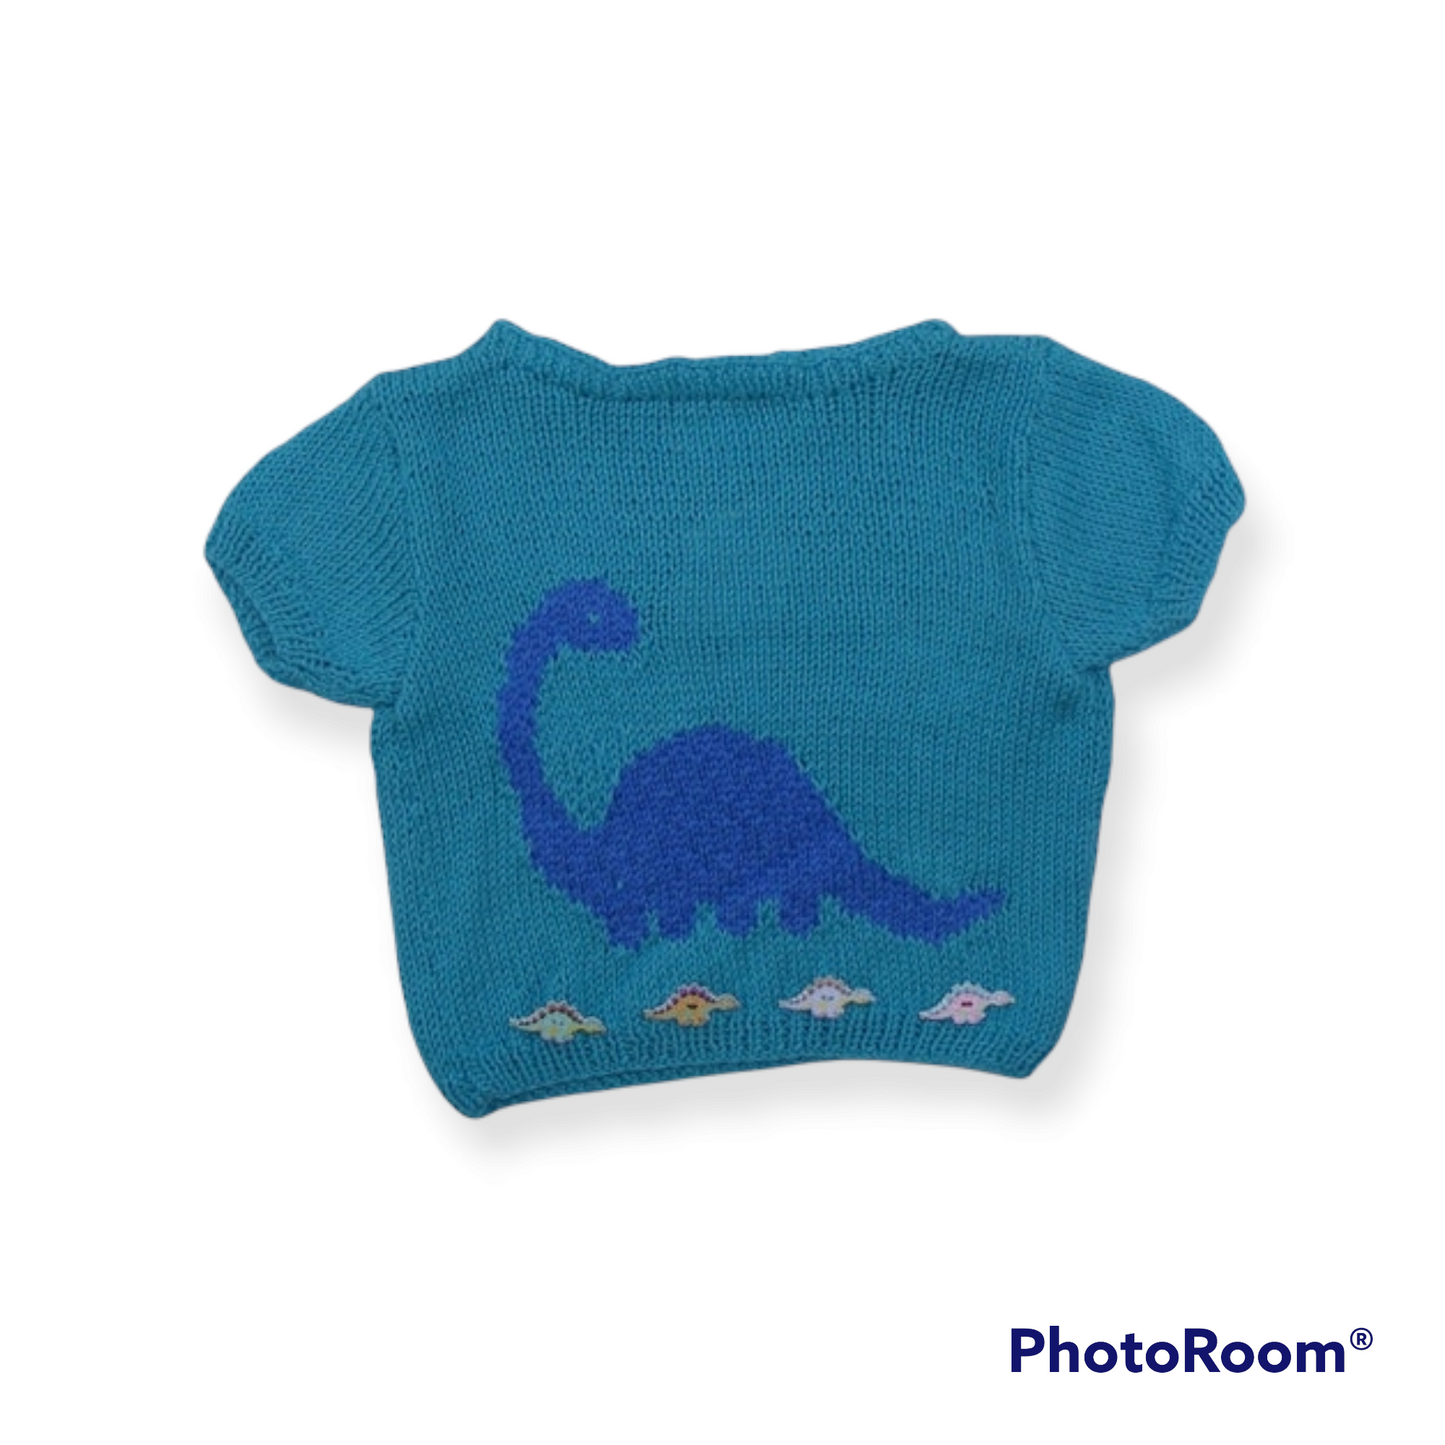 T-shirt bleu avec dinosaure - 6 mois